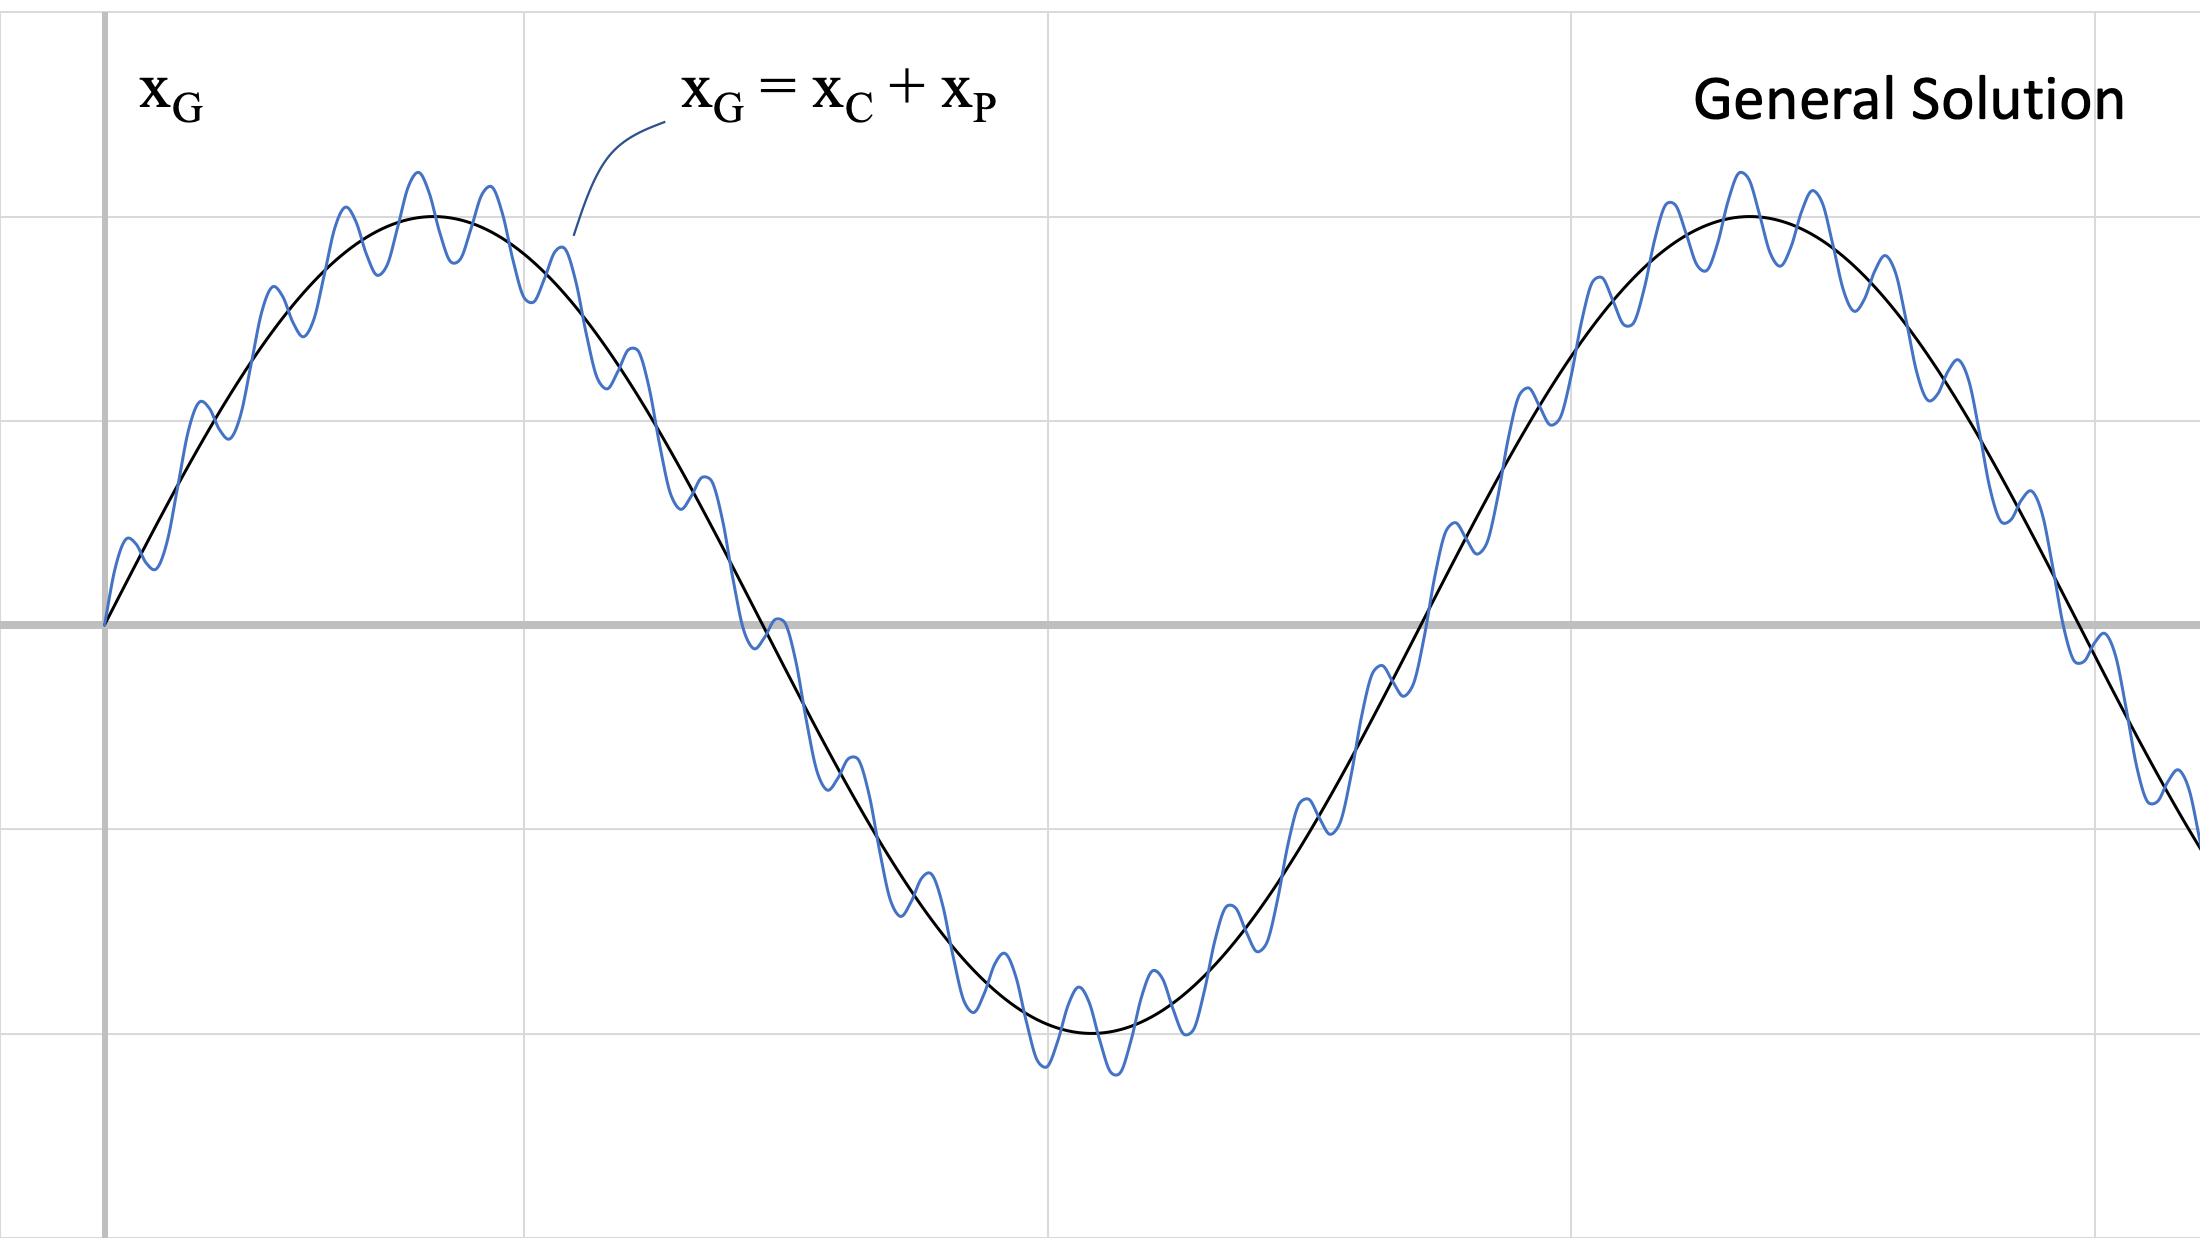 Gráfica de la solución general a la ecuación de movimiento del sistema, x_g = x_c + x_p La forma general de esta gráfica sigue la de las grandes oscilaciones de x_p, pero mientras atraviesa esas grandes oscilaciones también pasa por oscilaciones menores e irregulares similares a las de x_c.